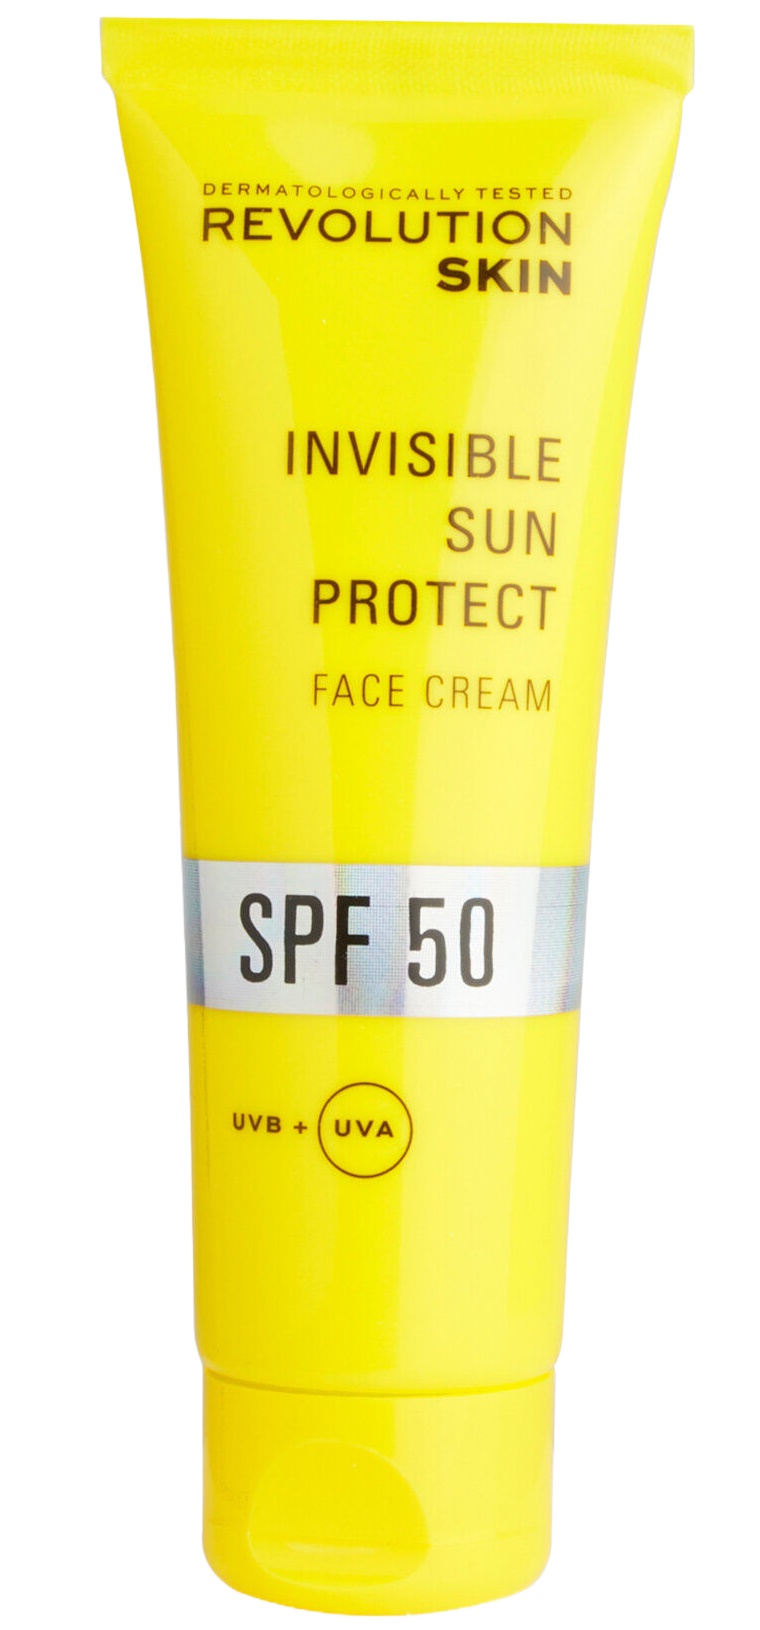 Revolution Skin Invisible Sun Protect Face Cream SPF 50